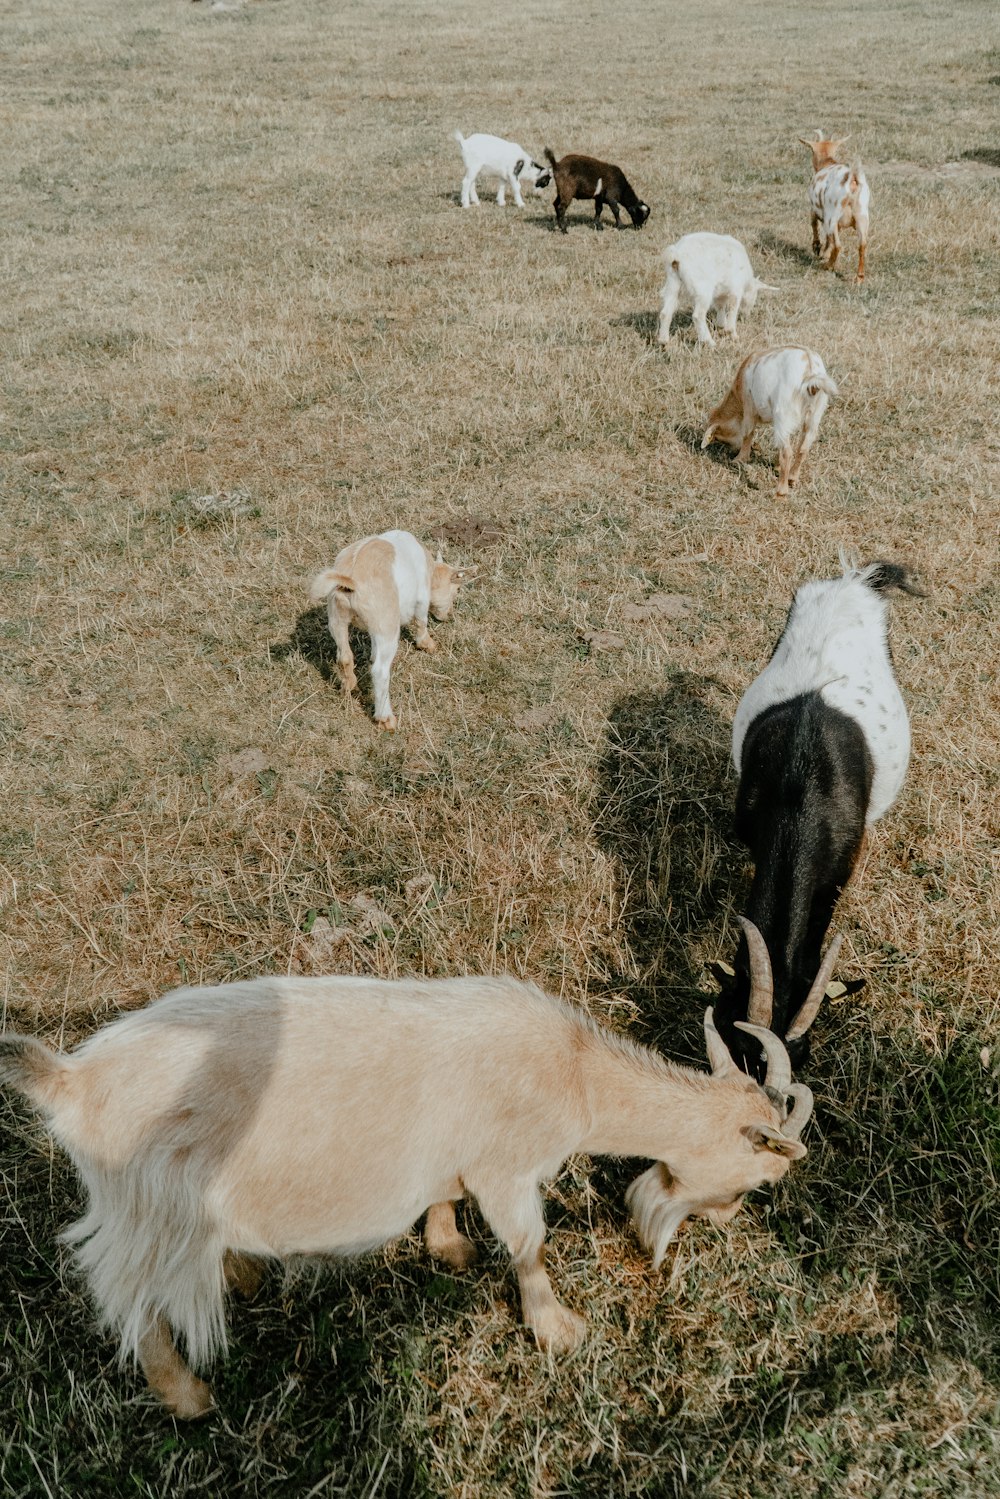 a herd of goats grazing on a dry grass field